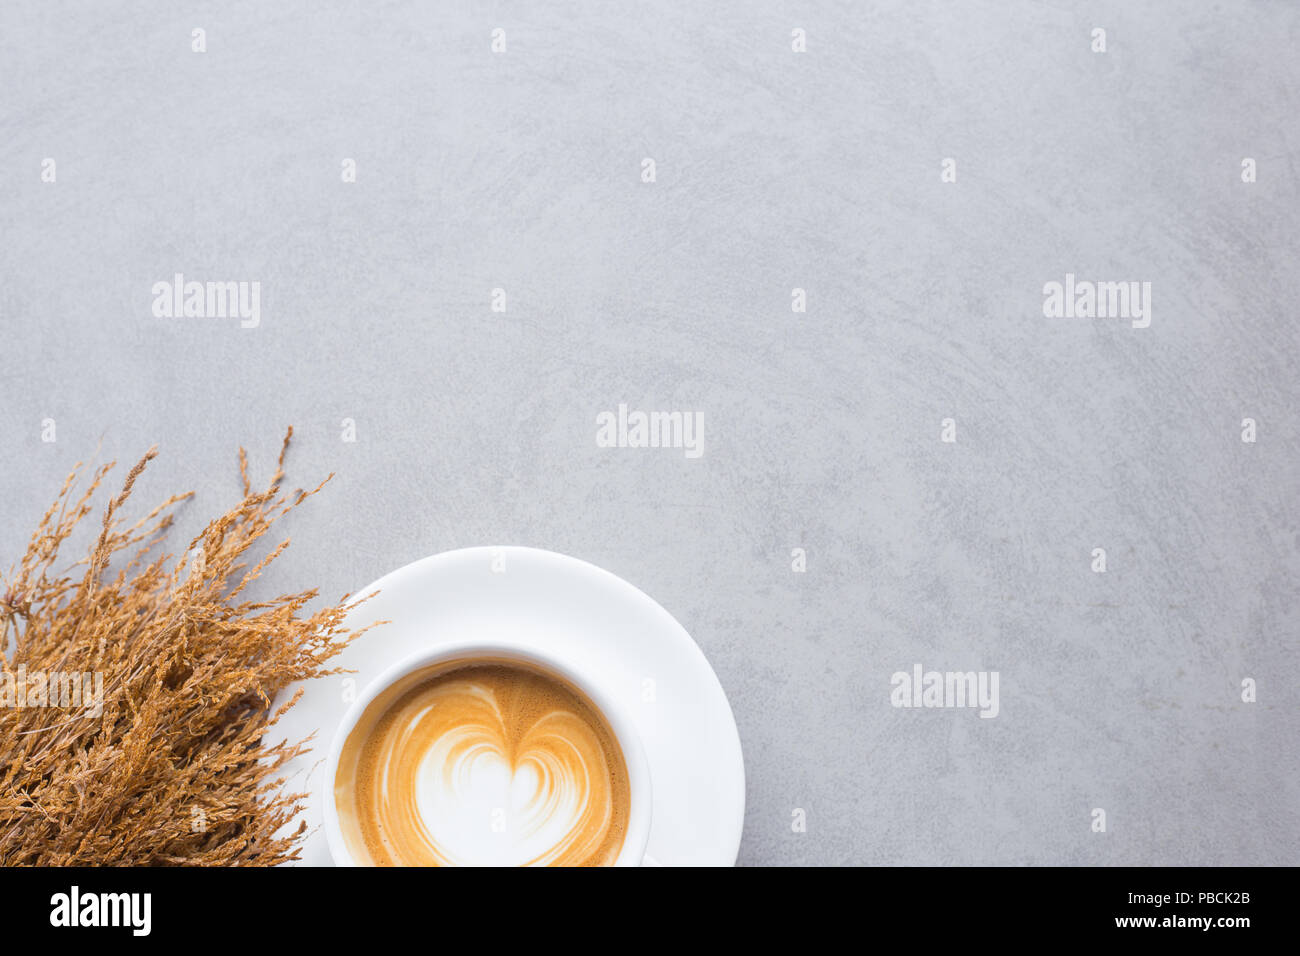 Eine Tasse Kaffee Latte auf weiße Tasse mit getrockneten Blumen auf Betonboden und Platz für Ihren Text Stockfoto